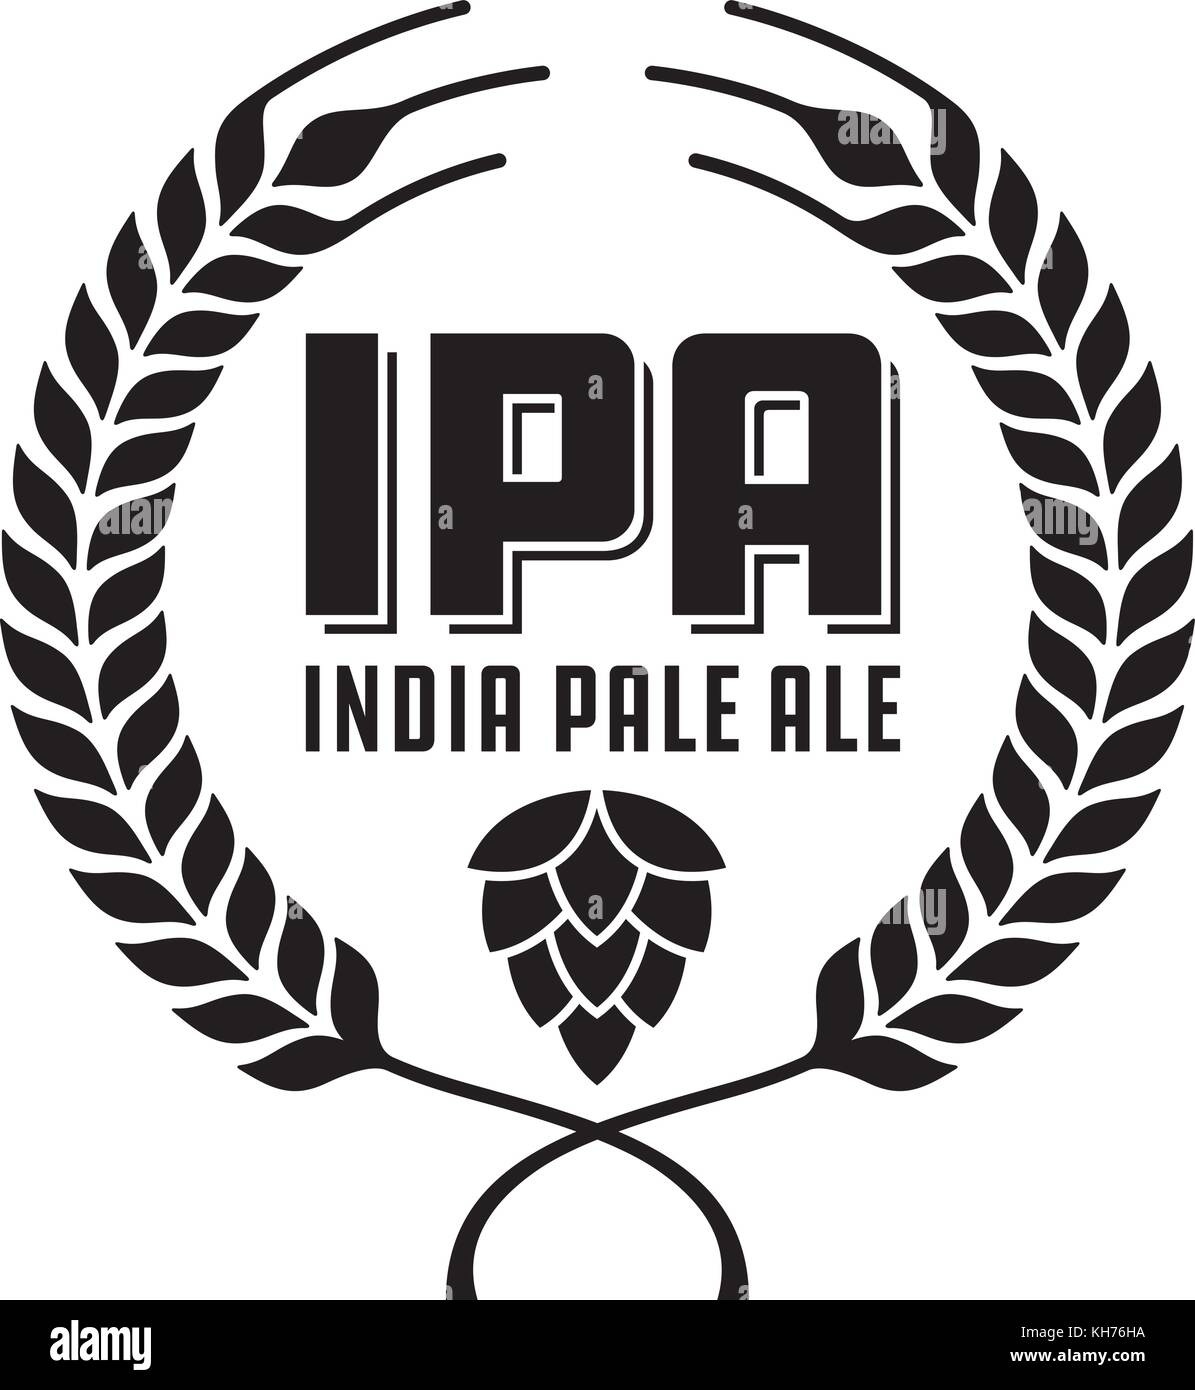 Ipa oder India Pale Ale Abzeichen oder Label. Handwerk Bier vektor design verfügt über Weizen oder Gerste Kranz und Hopfen. Stock Vektor